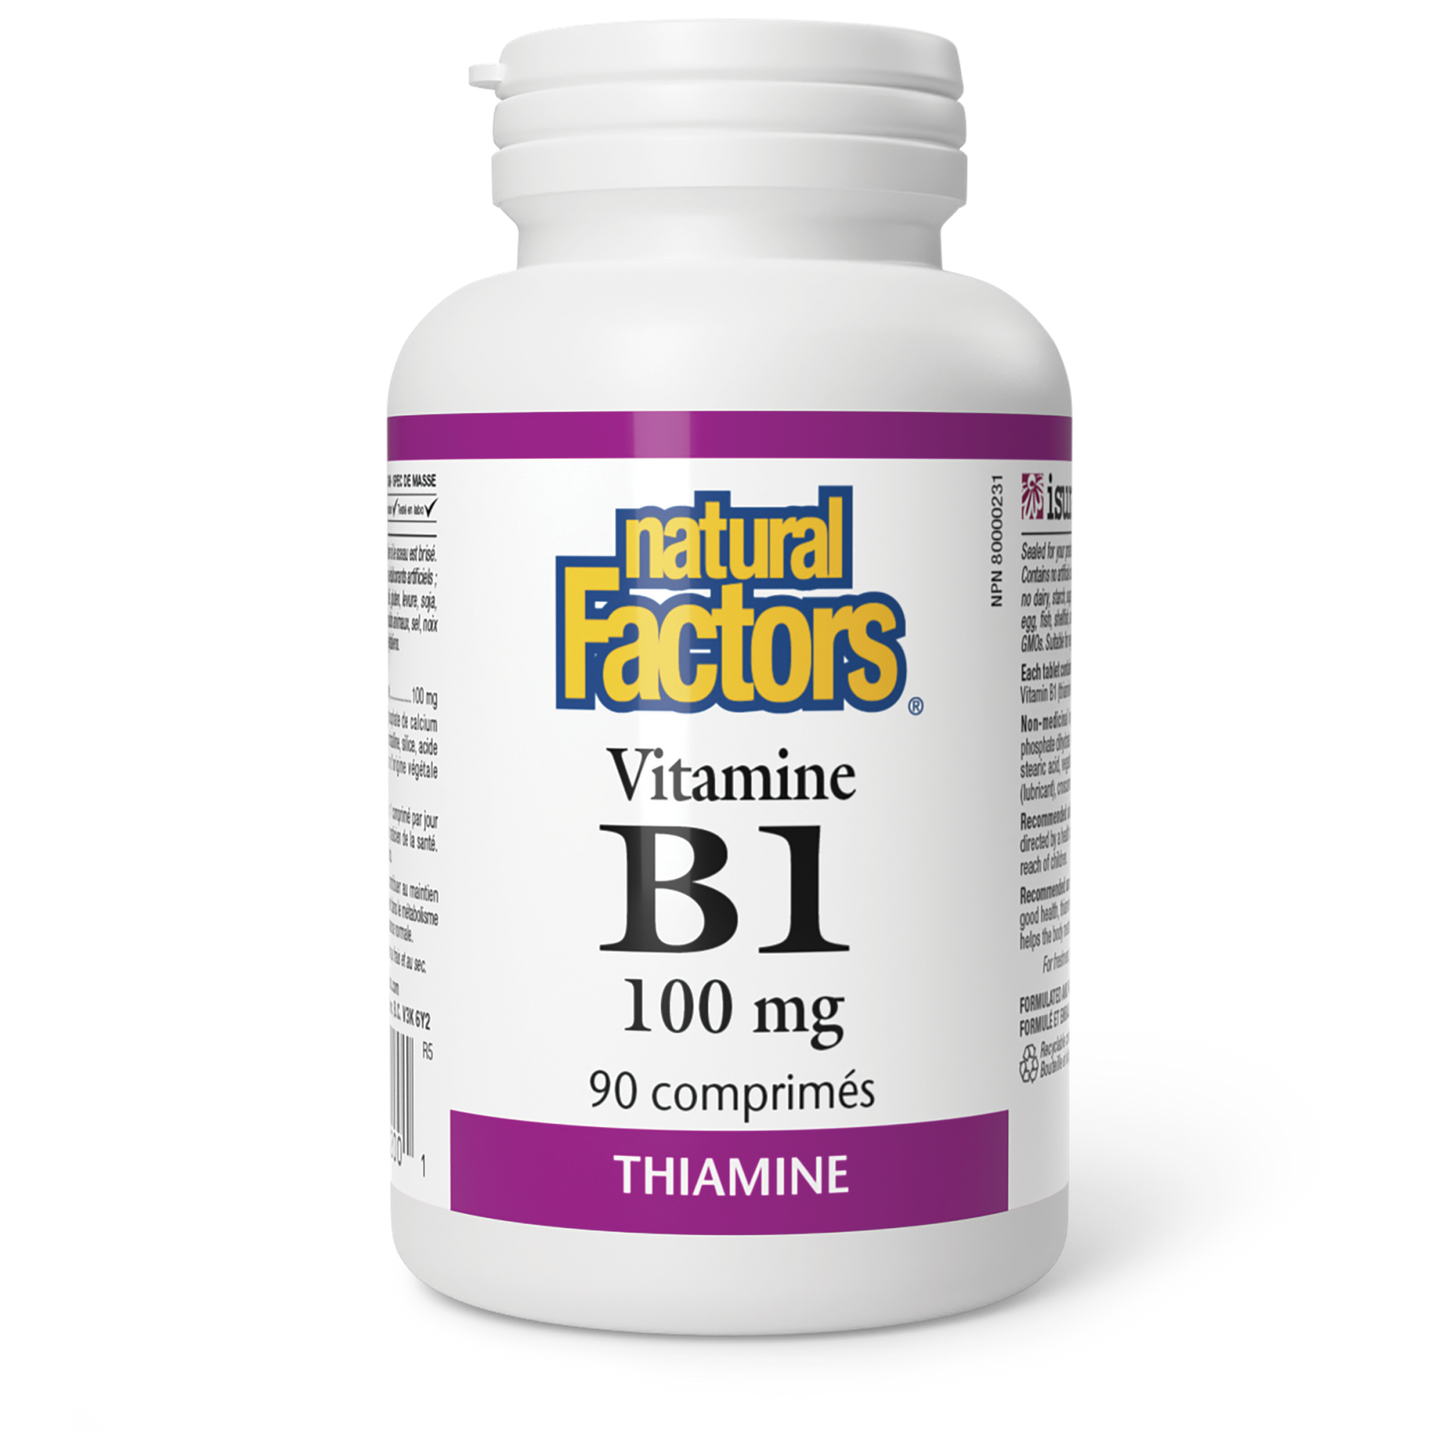 Vitamine B1 100 mg, Natural Factors|v|image|1200